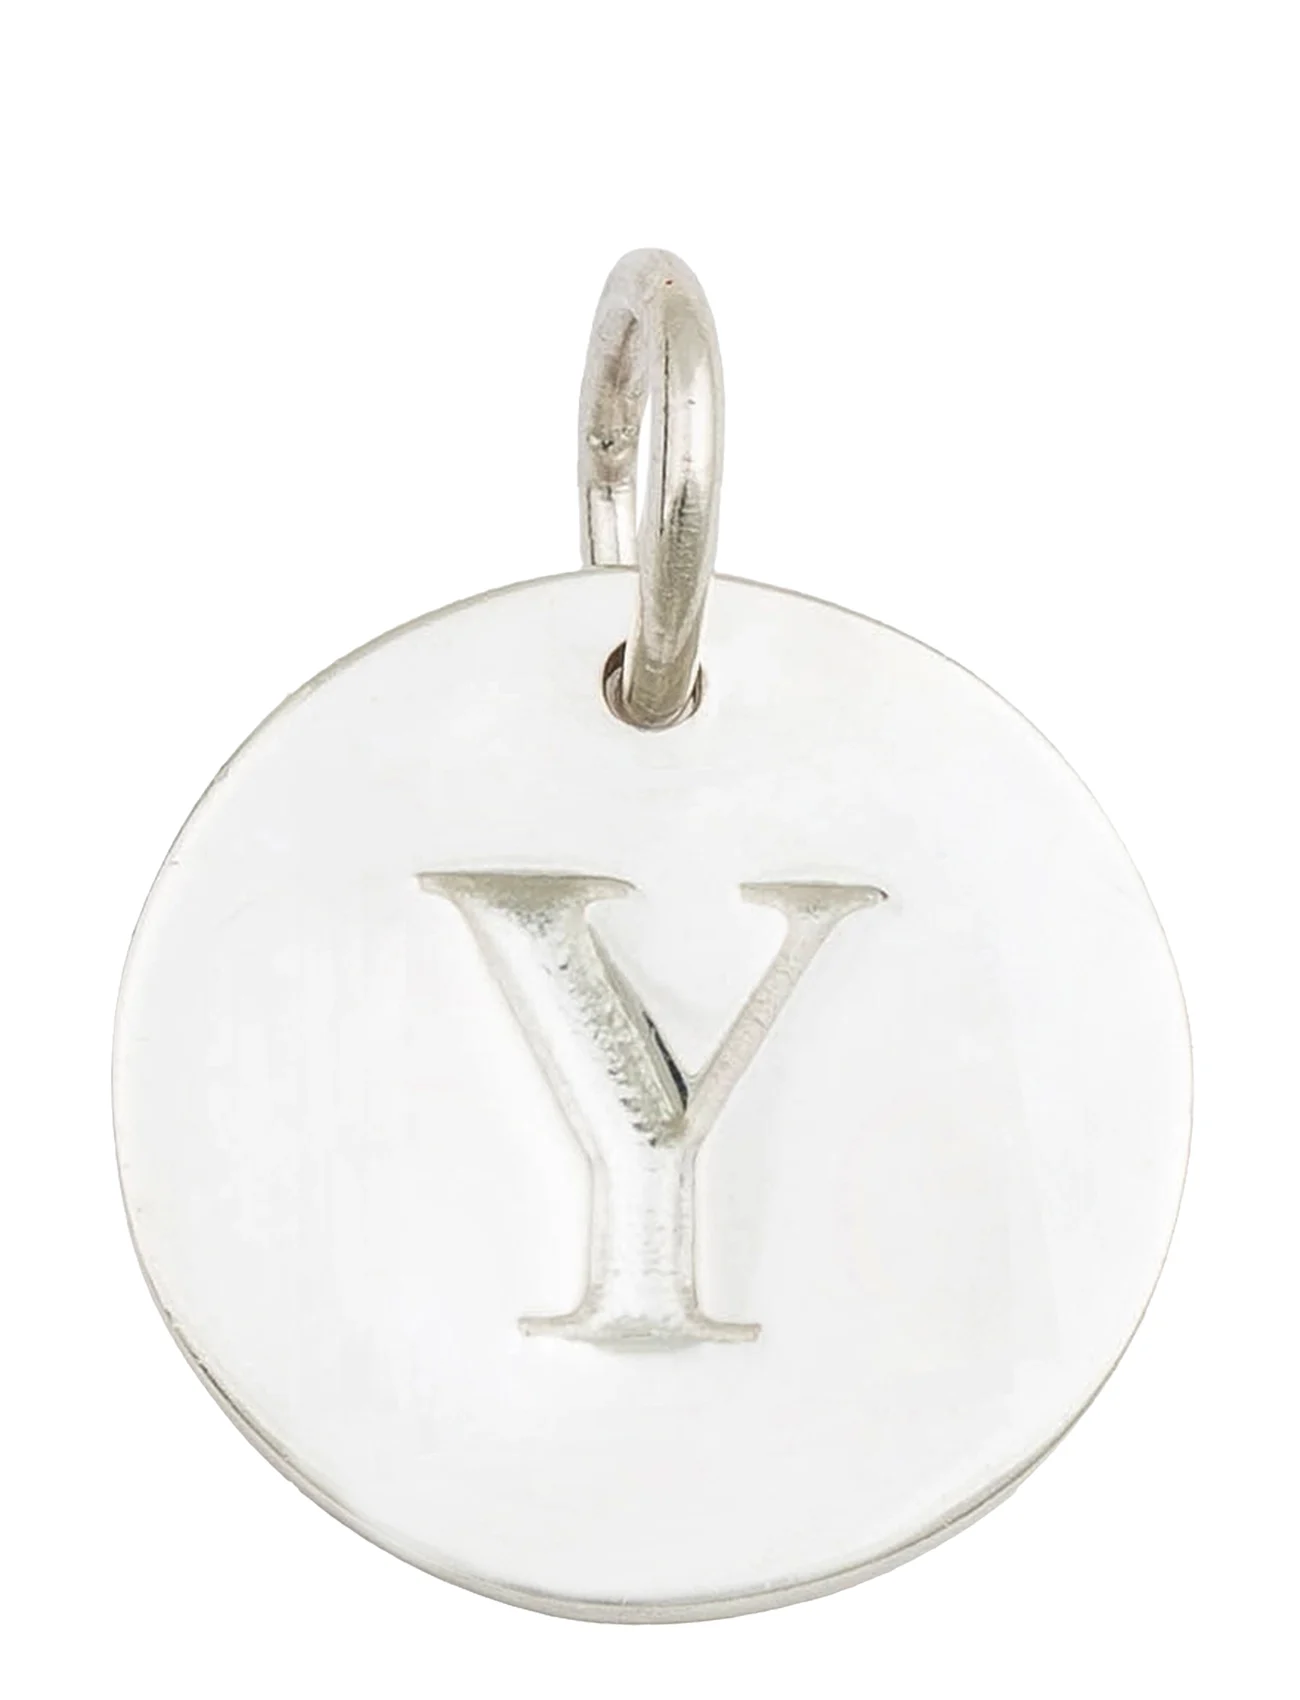 Syster P - Beloved Letter Silver - odzież imprezowa w cenach outletowych - silver - 0